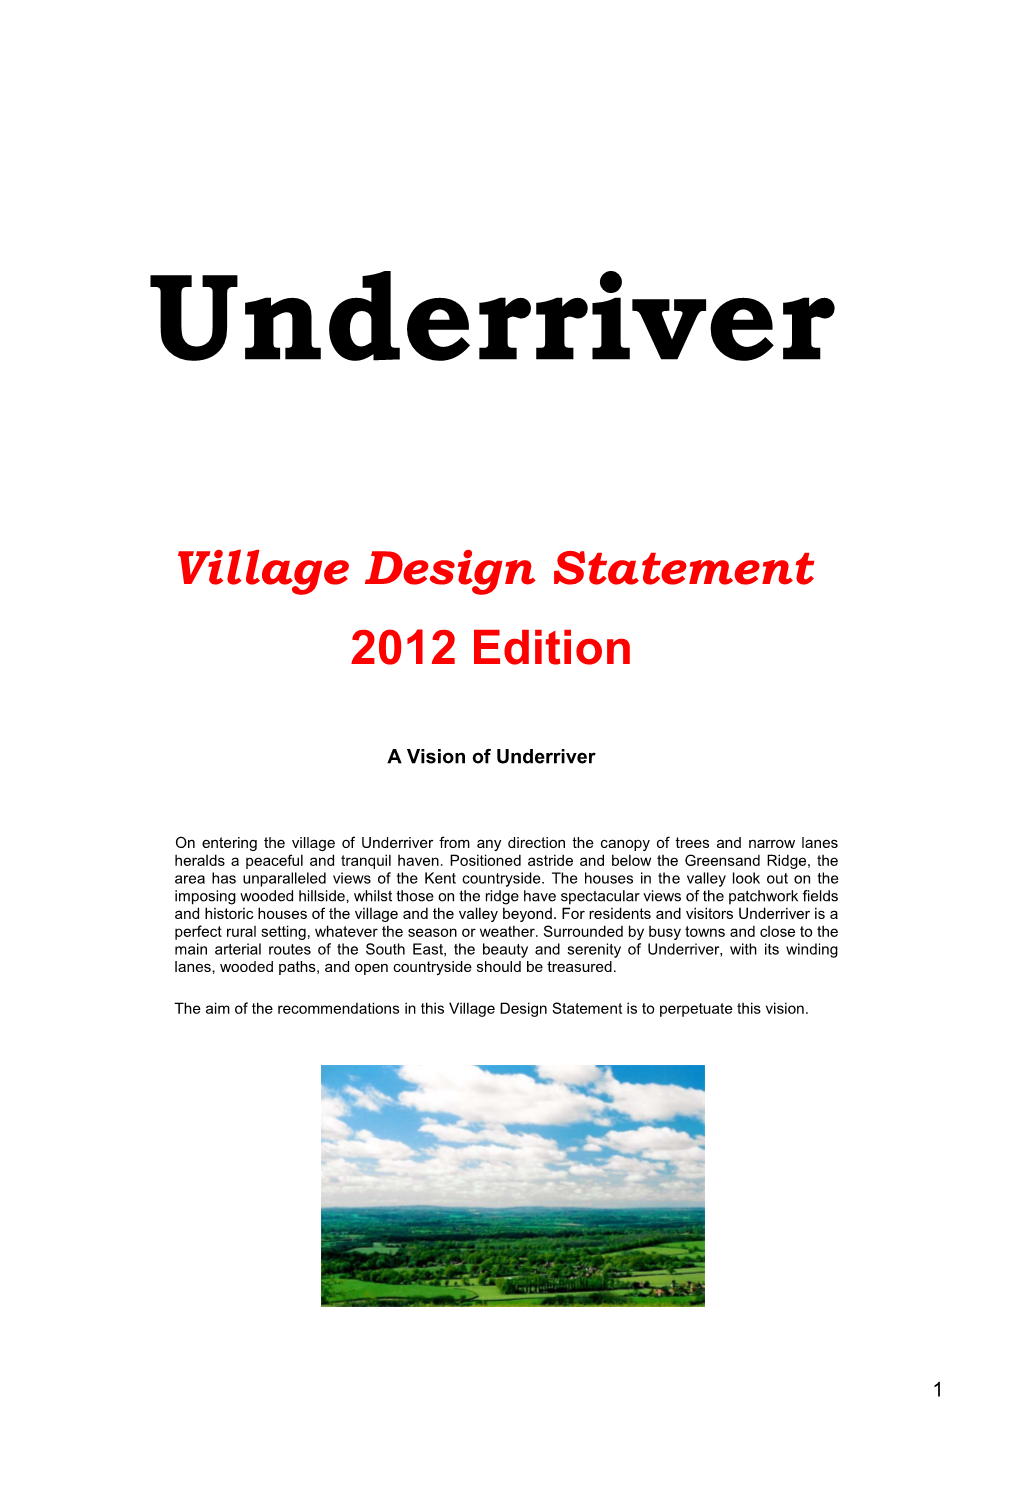 Underriver Village Design Statement